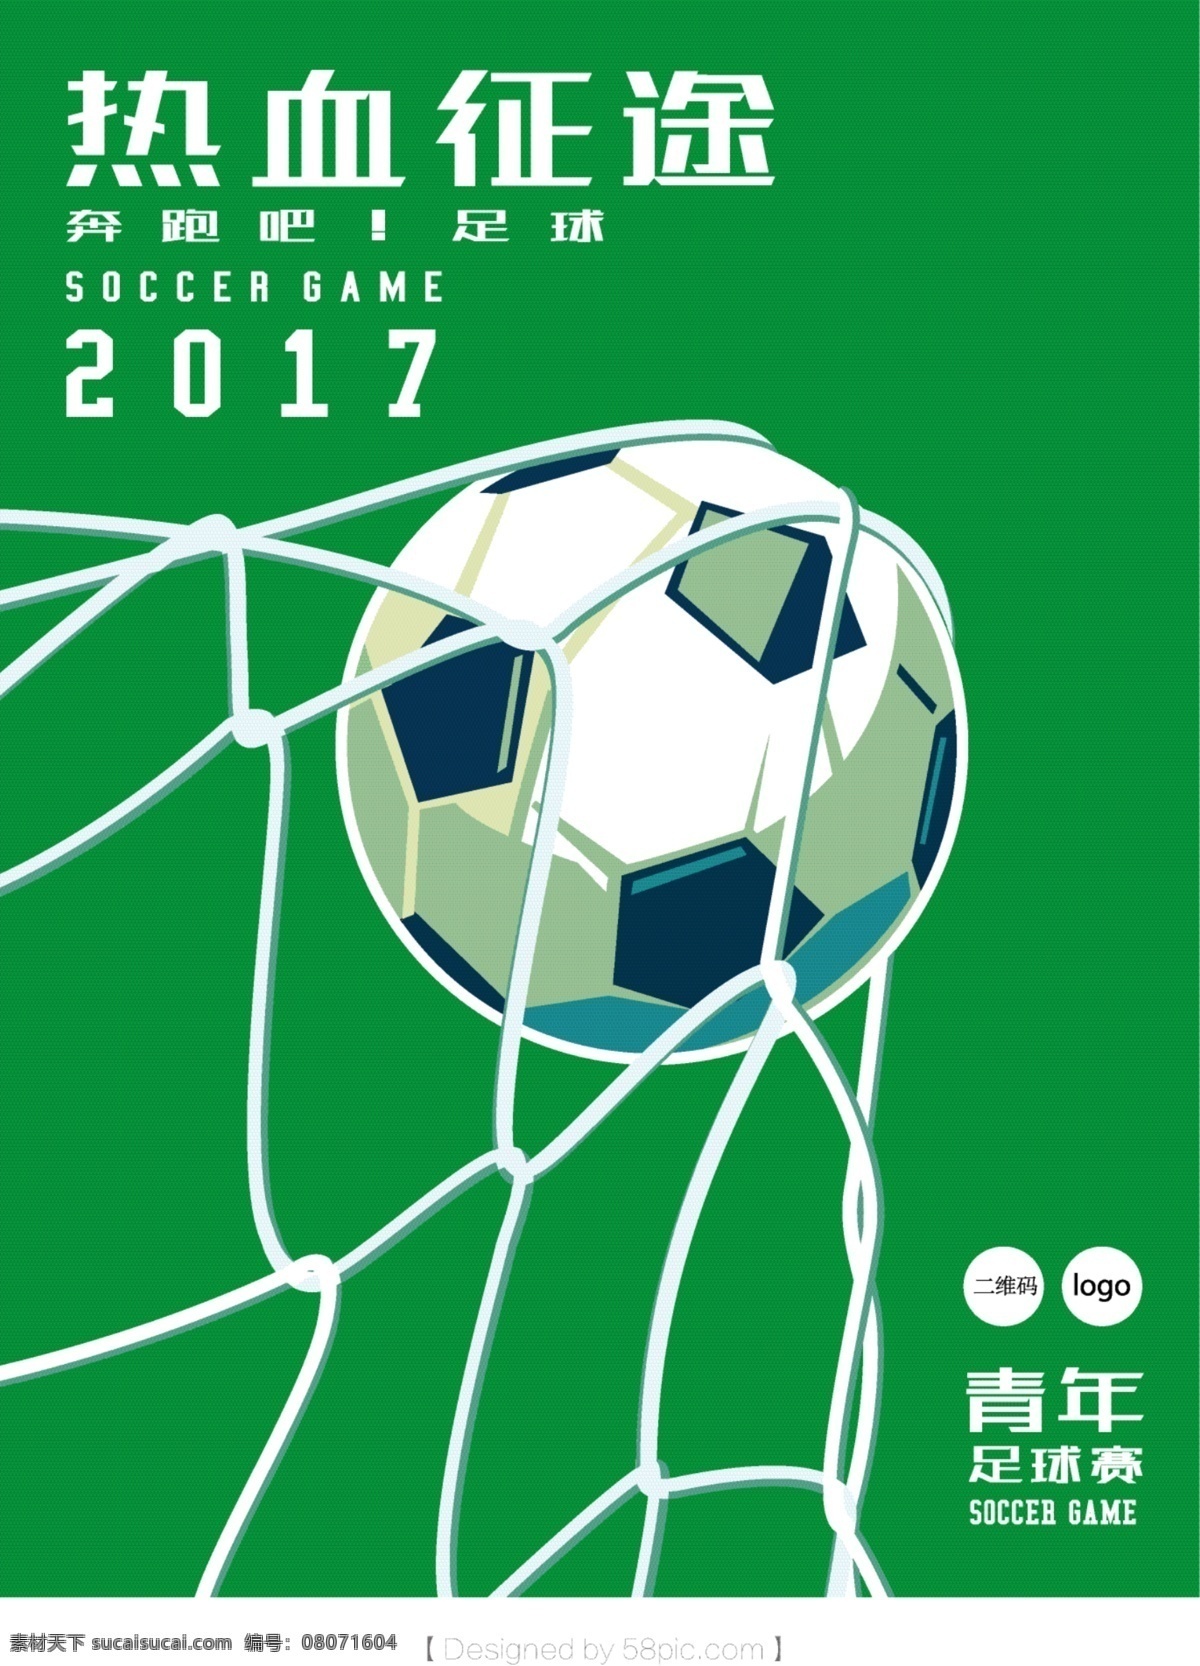 热血 足球比赛 海报 足球海报 矢量素材 矢量插画 运动海报 体育海报 足球比赛海报